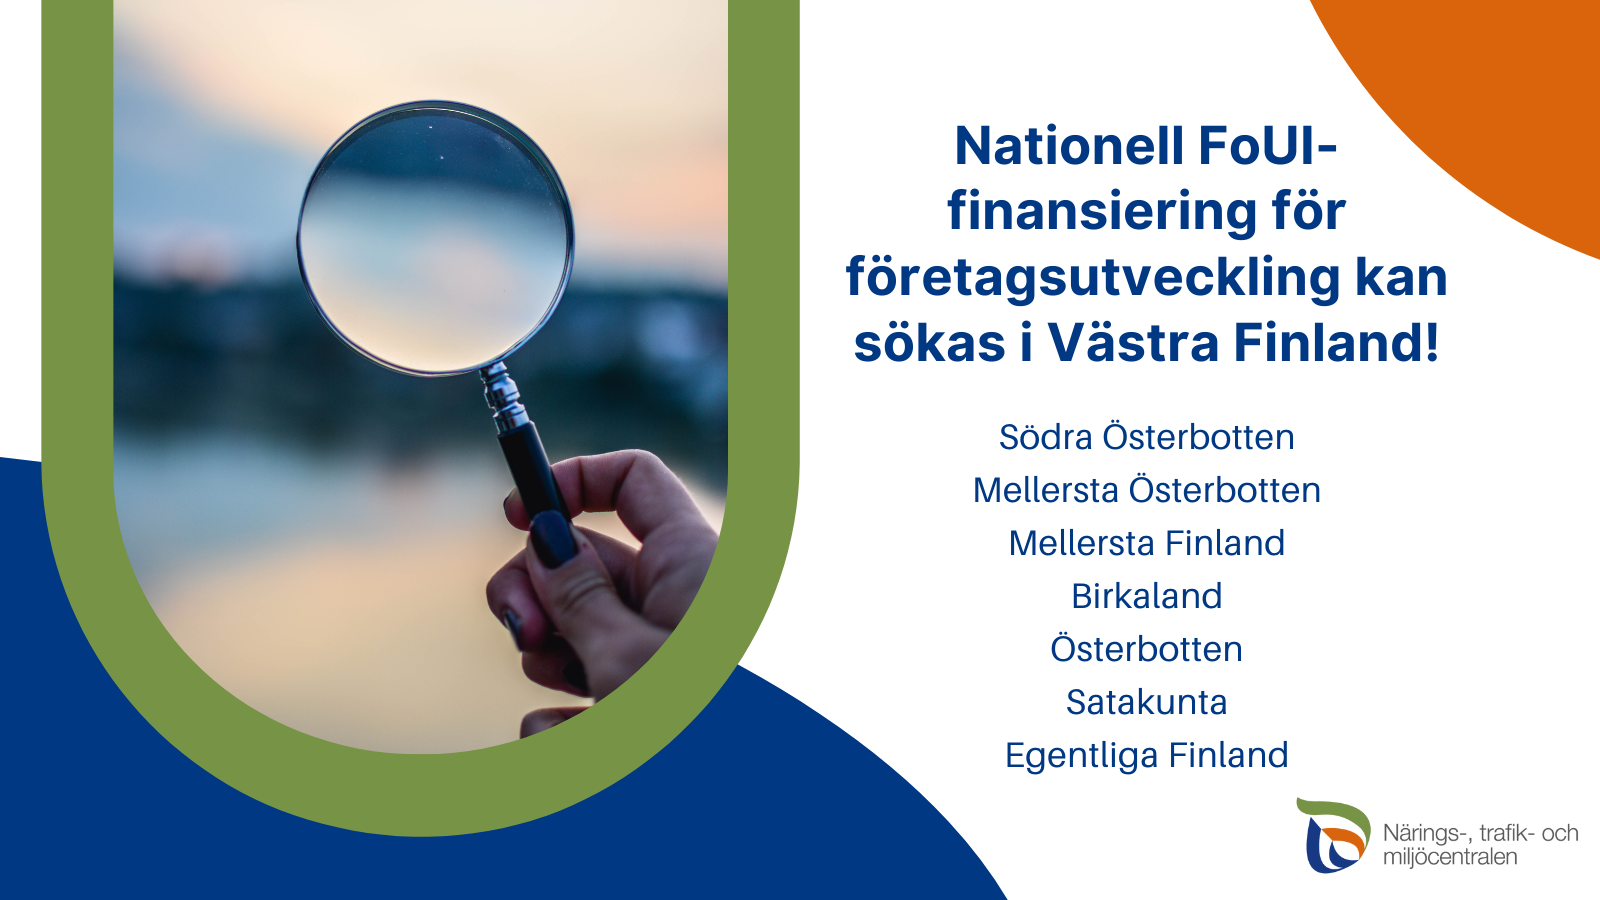 Nationall FoUI-finansiering för företagsutveckling kan sökas i Västra Finland! Södra ÖSterbotten, Mellersta Österbotten, Mellersta Finland, Birkaland, Österbotten, Satkaunta och Egentliga Finland. Logon: NTM-centralen.